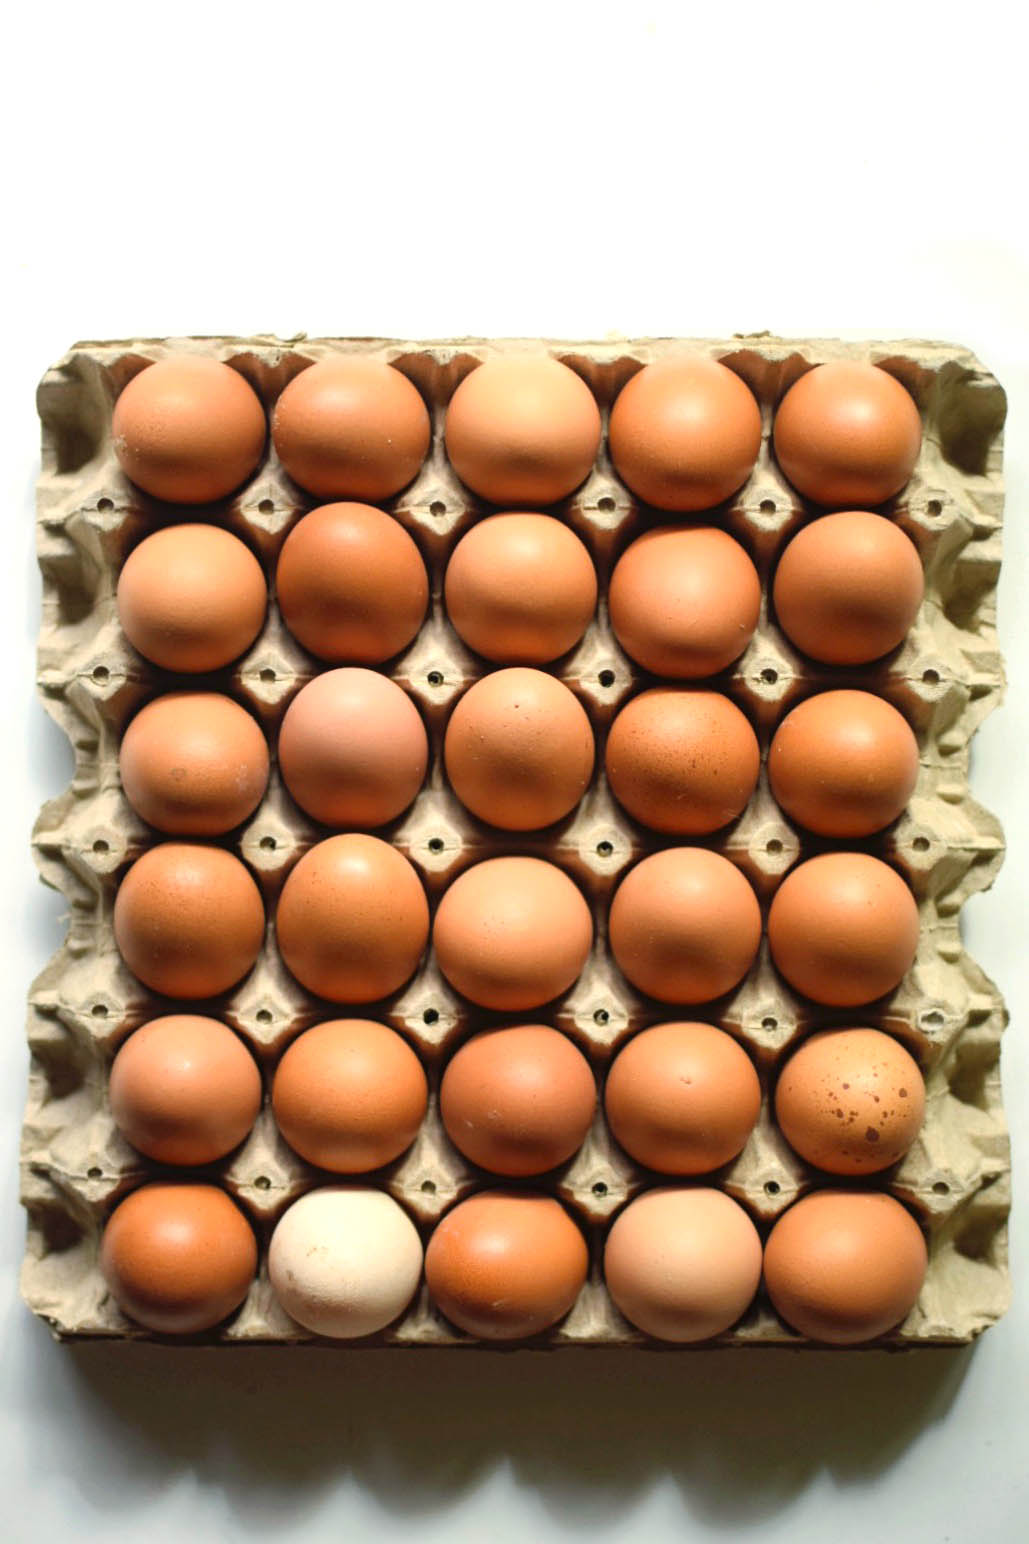 Bandeja 30 Huevos Extra Gallinas Libres